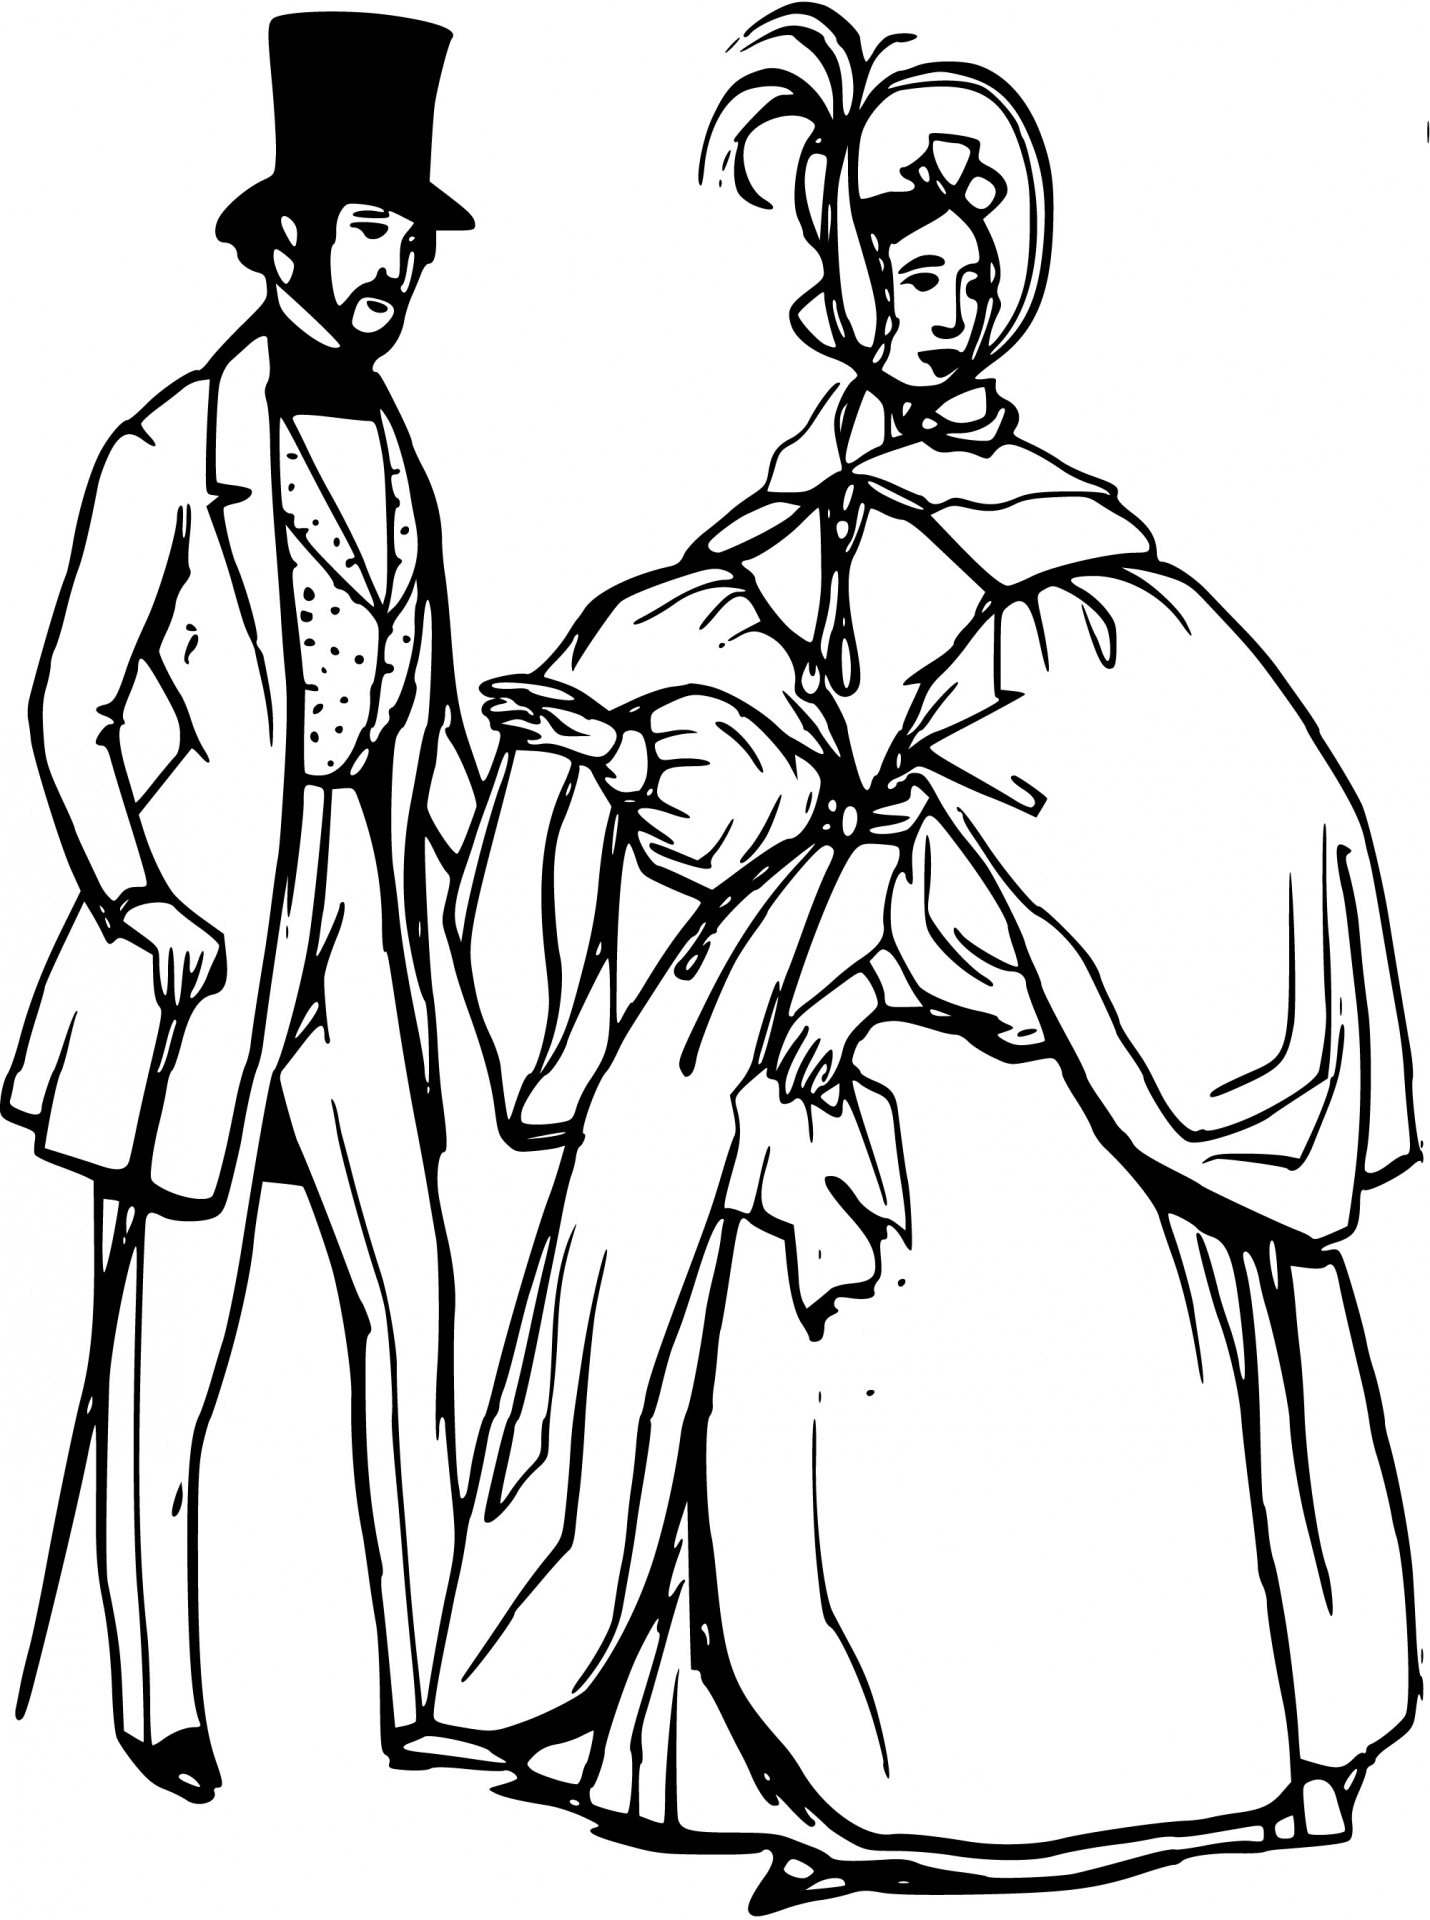 Зарисовка дворянского костюма